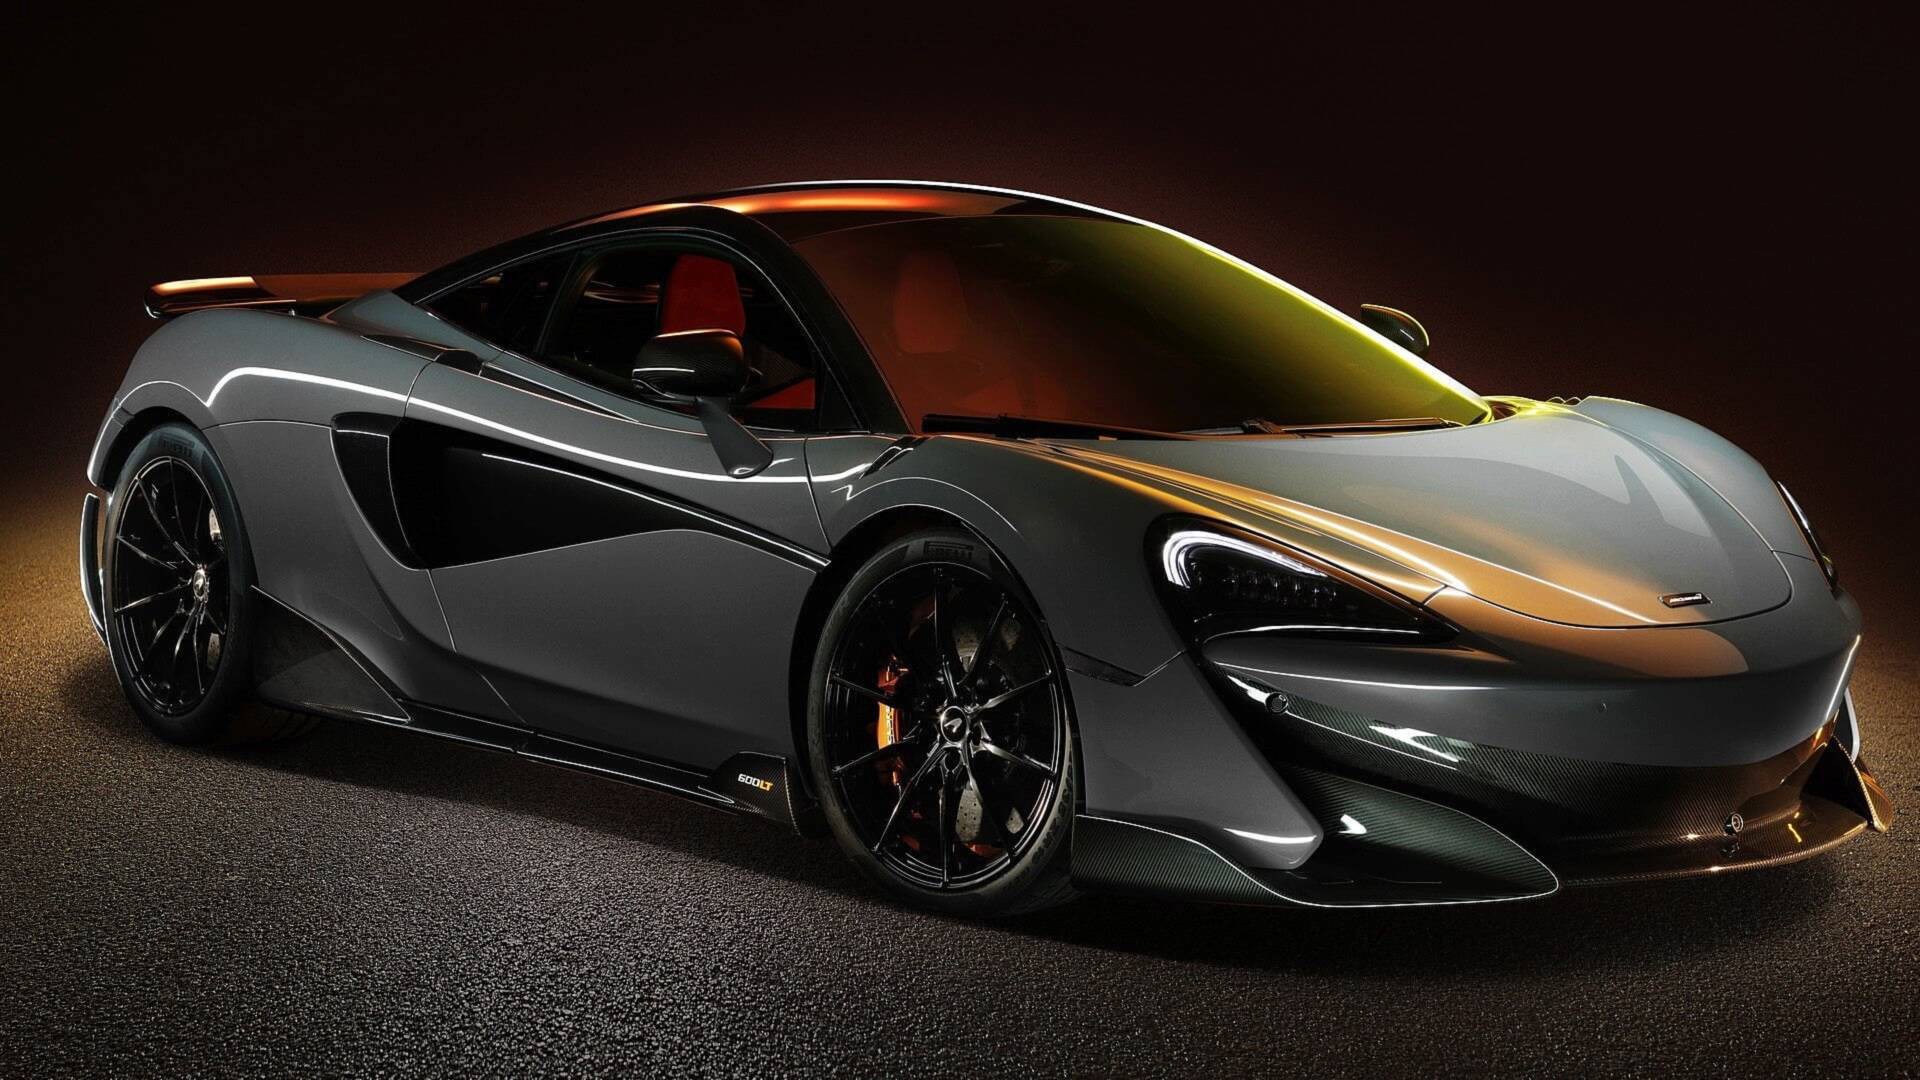 Chiếc siêu xe 600LT của McLaren sẽ khiến bạn trầm trồ với thiết kế vô cùng nổi bật và hiệu năng tuyệt vời. Điều đó chưa kể đến cảm giác mạnh mẽ khi lái chiếc xe này trên đường.